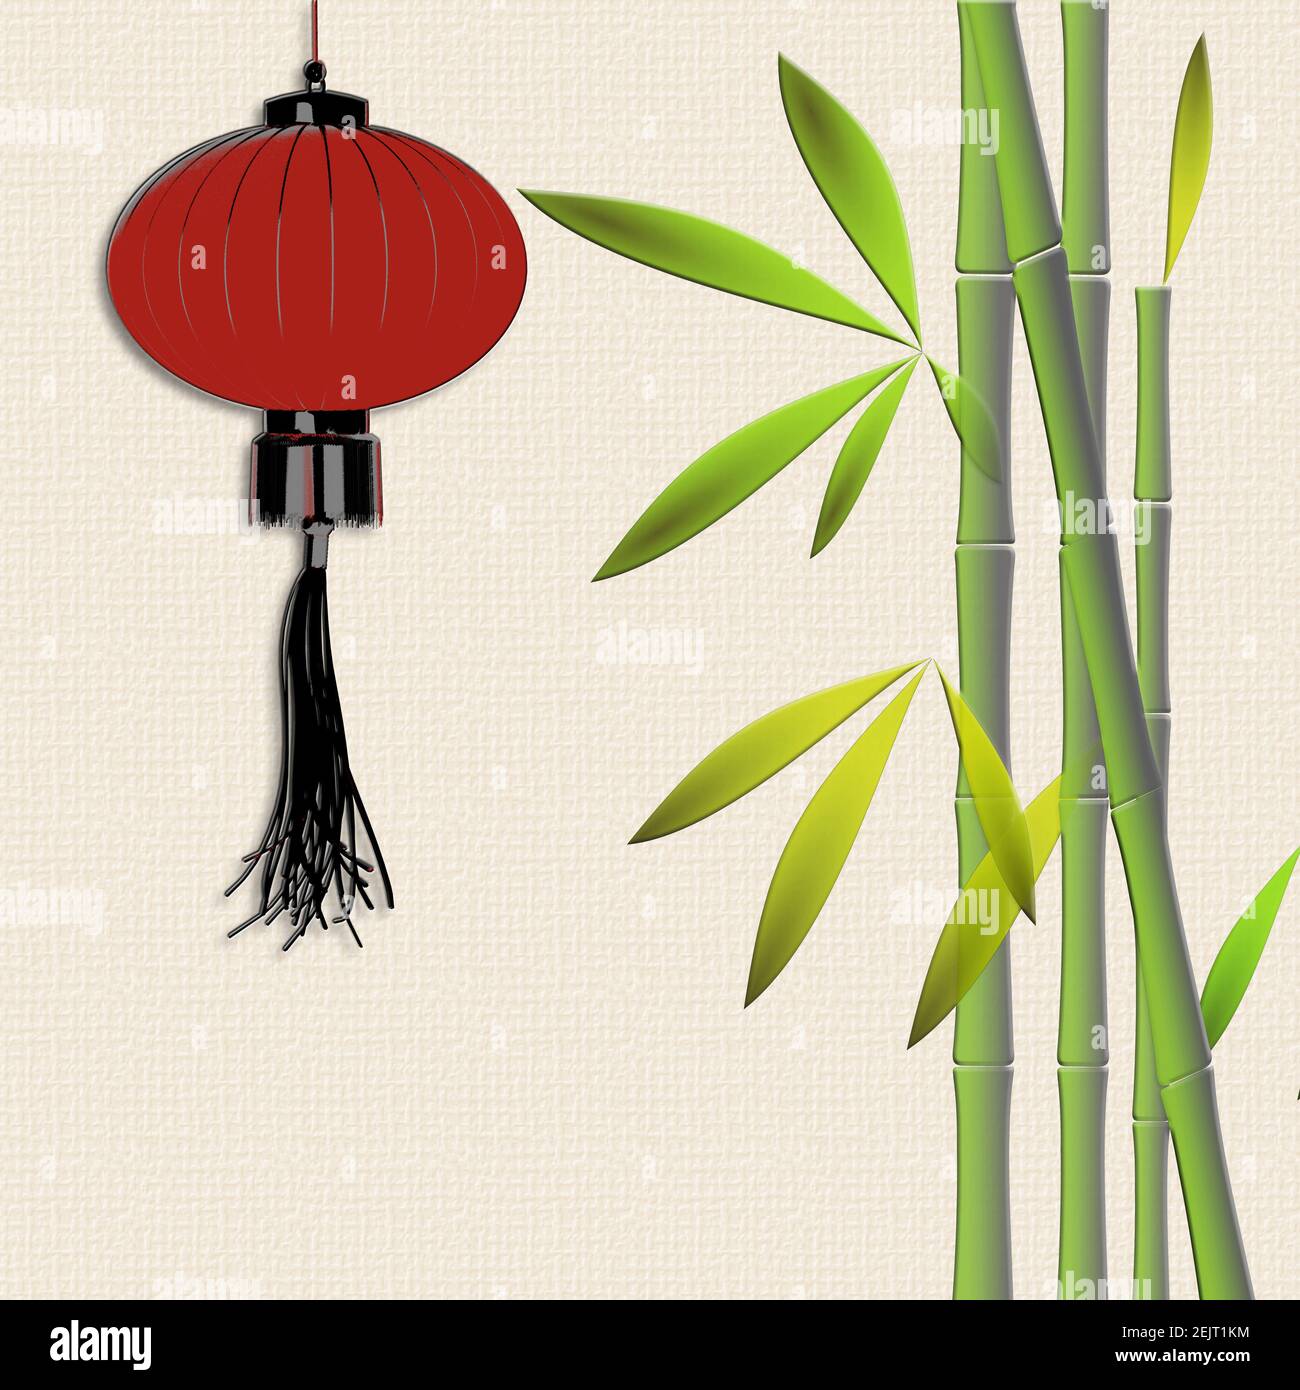 Lanternes suspendues rouges, bambou sur fond jaune pSTEL. Décor asiatique traditionnel pour festival lanterne, fête de la mi-automne, nouvel an chinois. Placer Banque D'Images